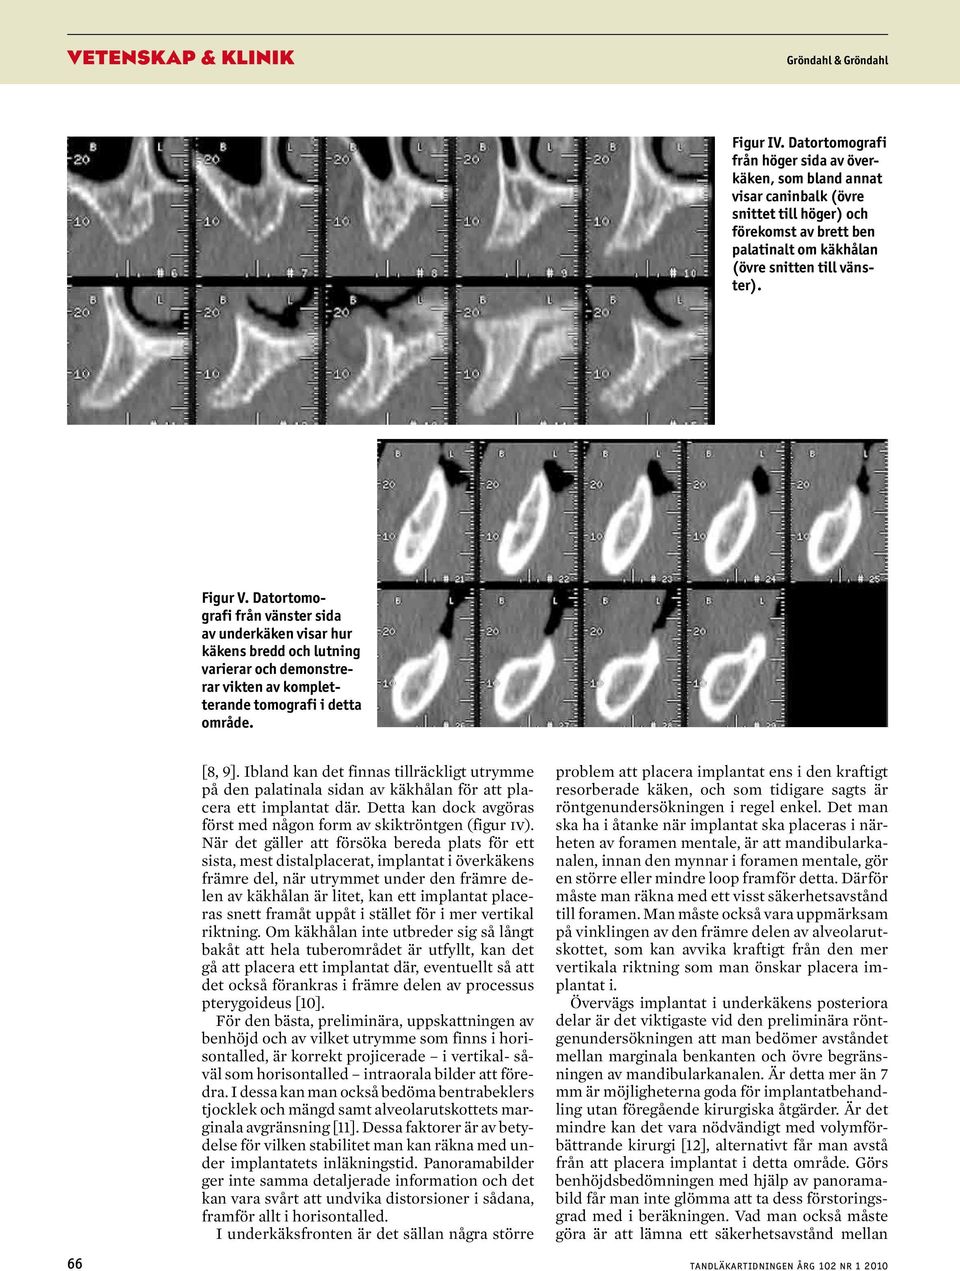 Datortomografi från vänster sida av underkäken visar hur käkens bredd och lutning varierar och demonstrerar vikten av kompletterande tomografi i detta område. [8, 9].